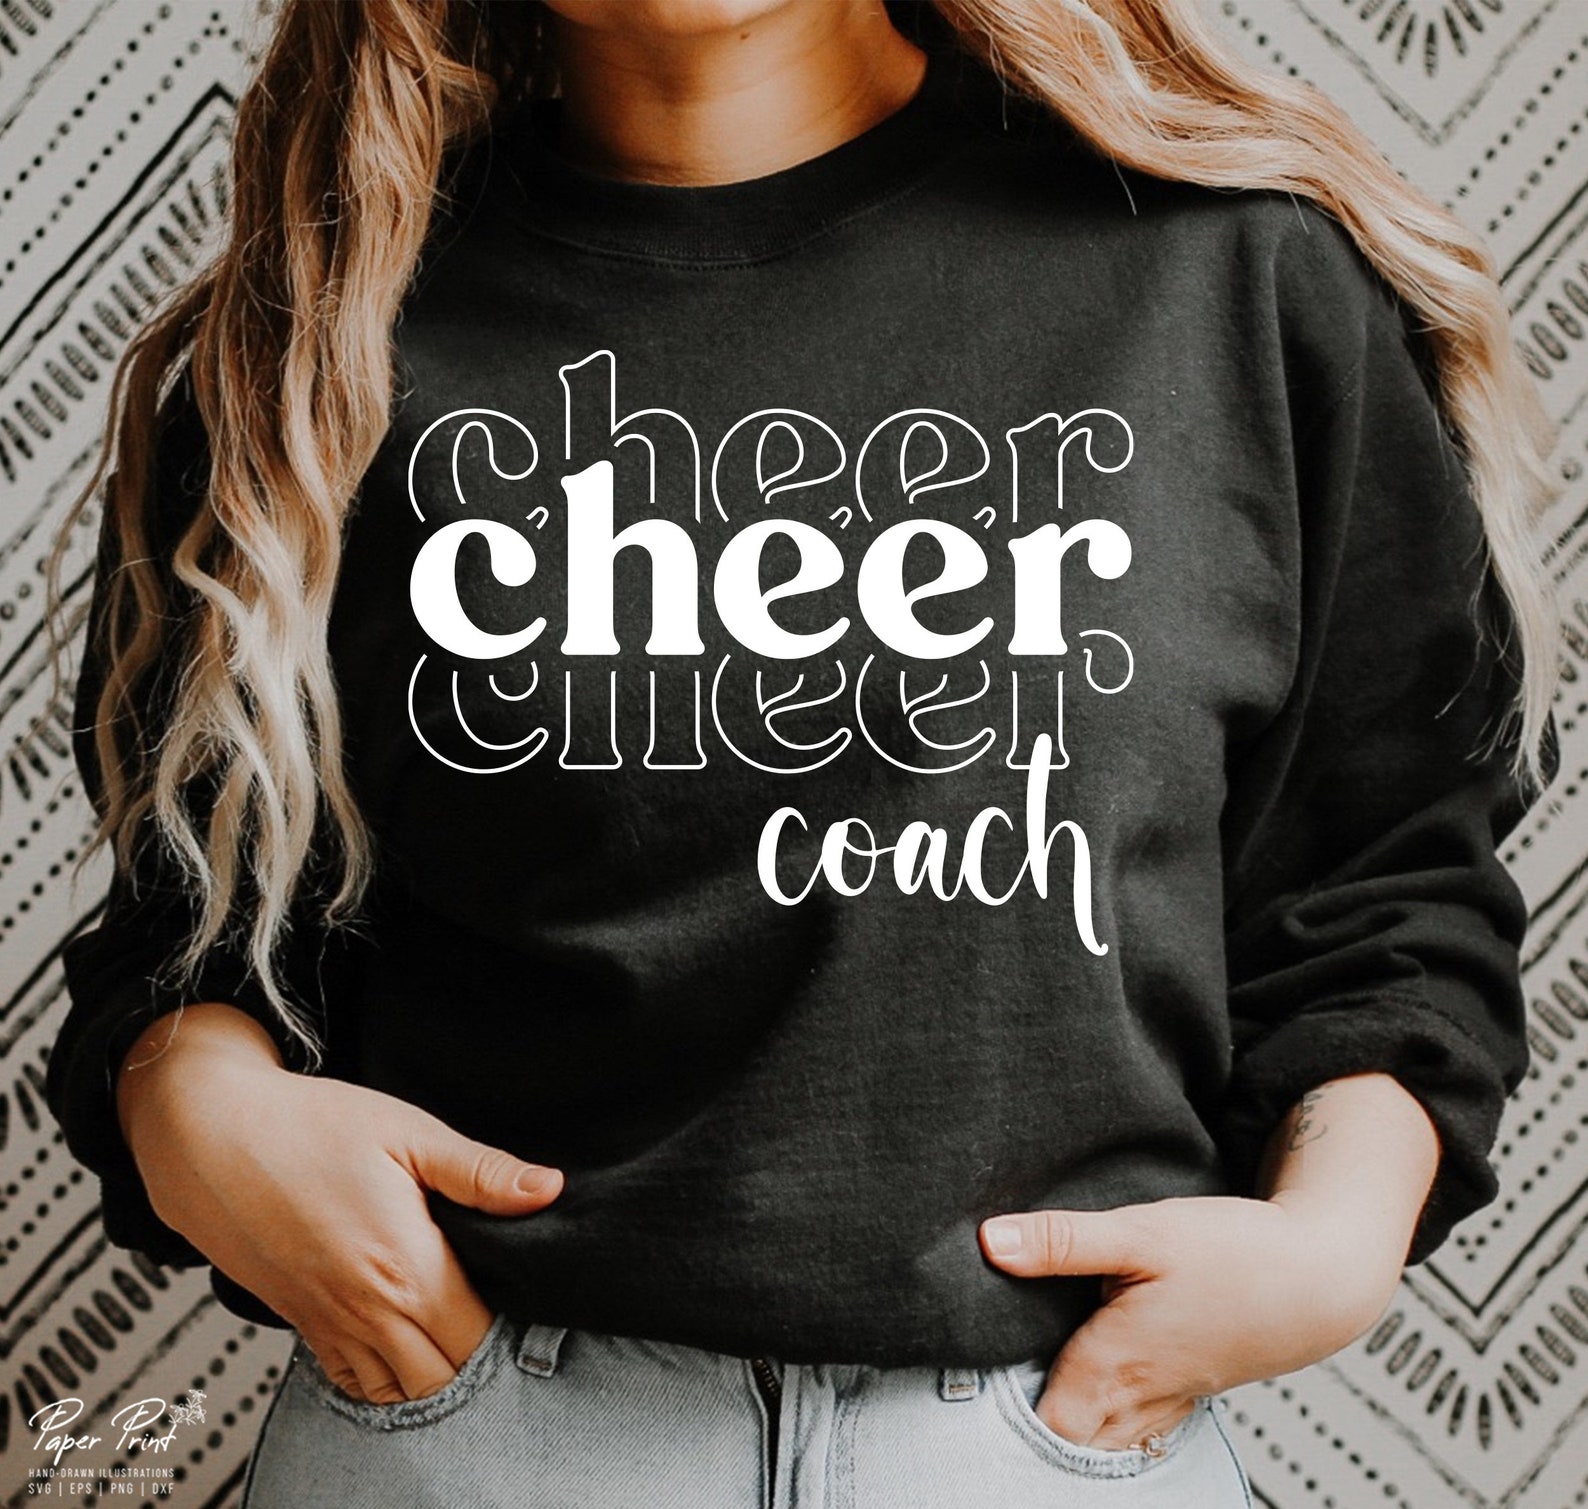 Cheer Coach SVG Cheerleader Coach SVG Cheer Coach Shirt SVG - Etsy